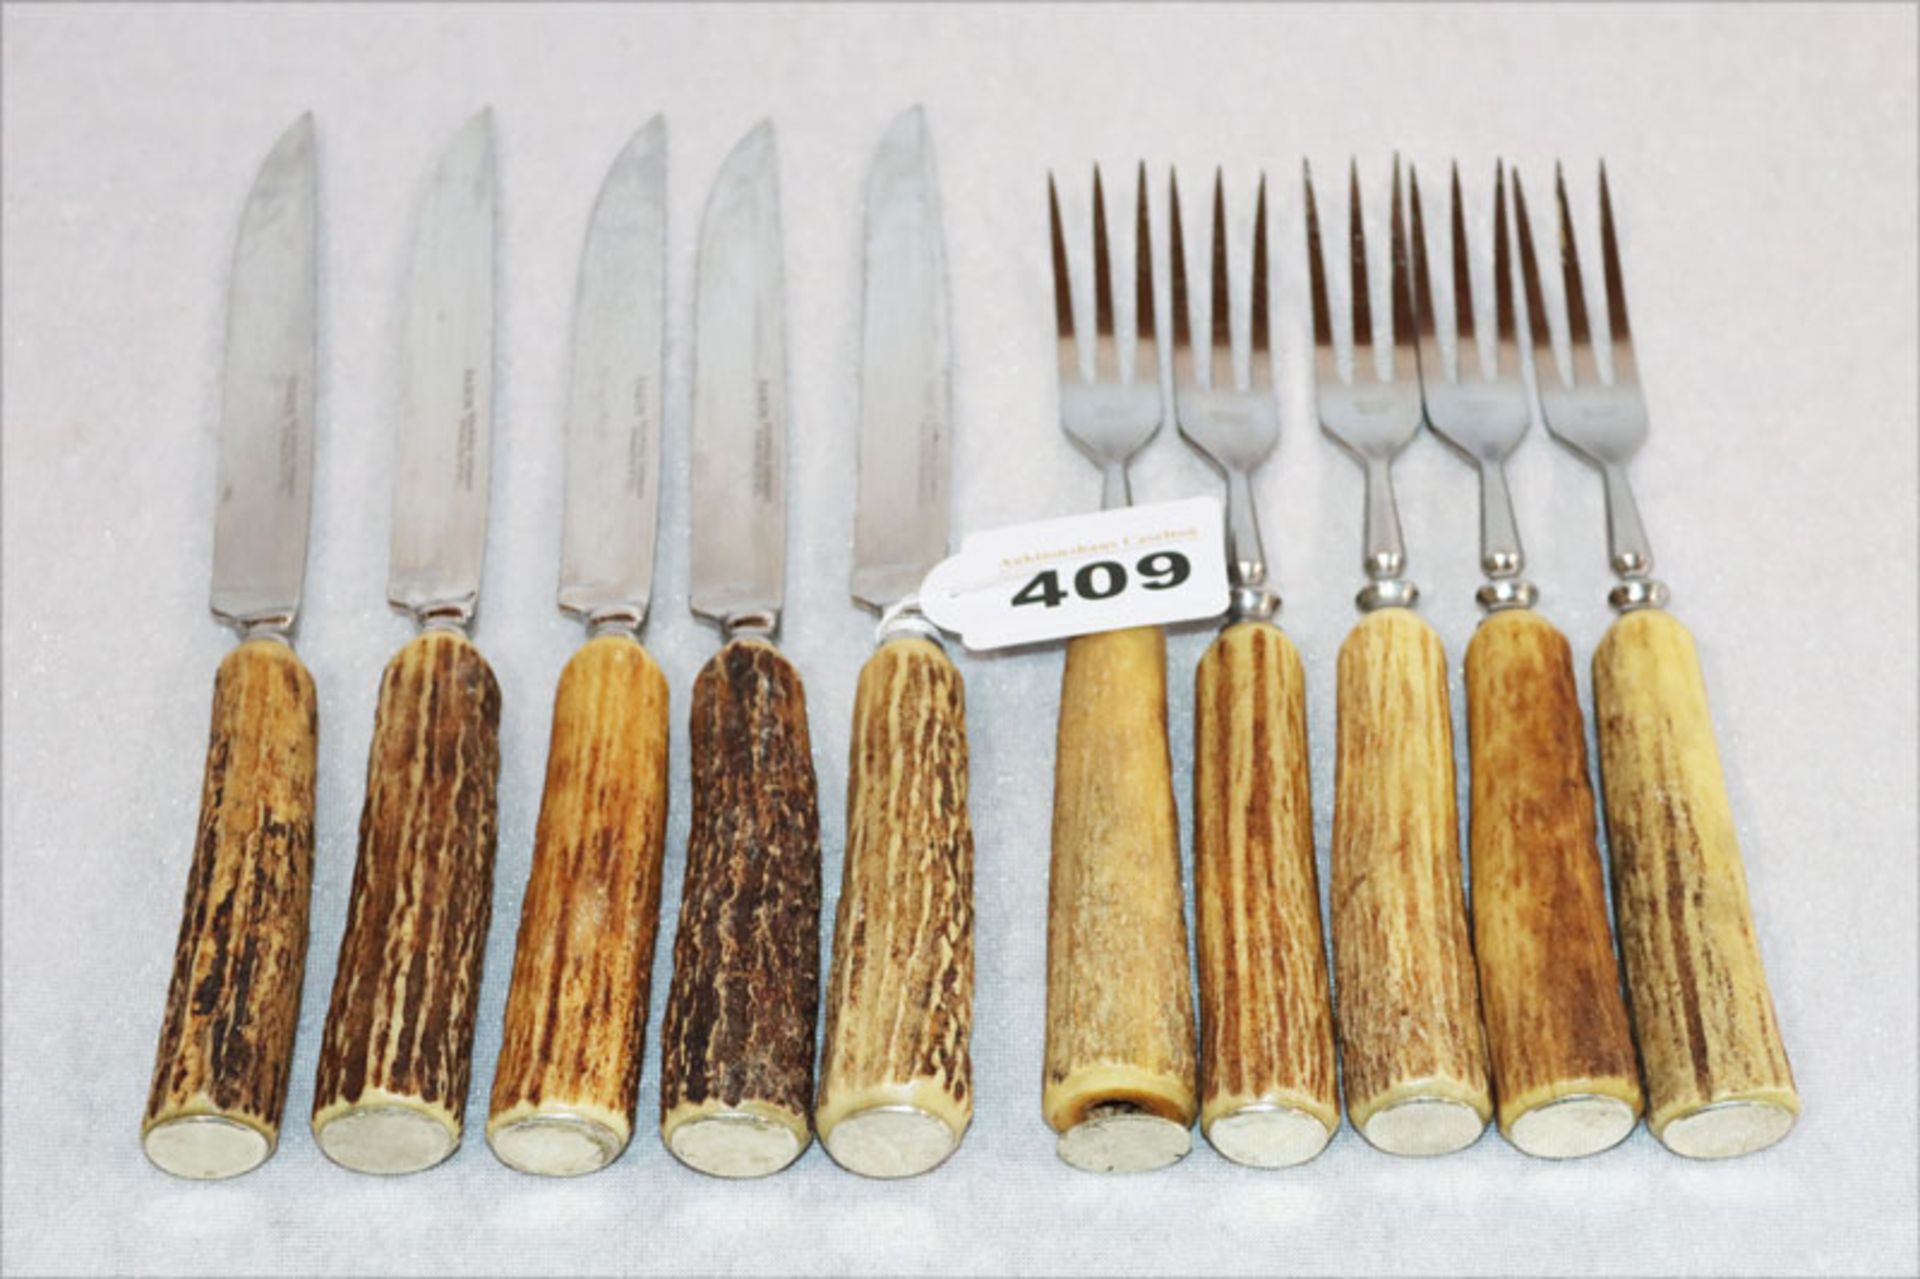 Hirschhorn Besteck: 5 Messer und 5 Gabeln mit Hirschhorngriffen, Gebrauchsspuren